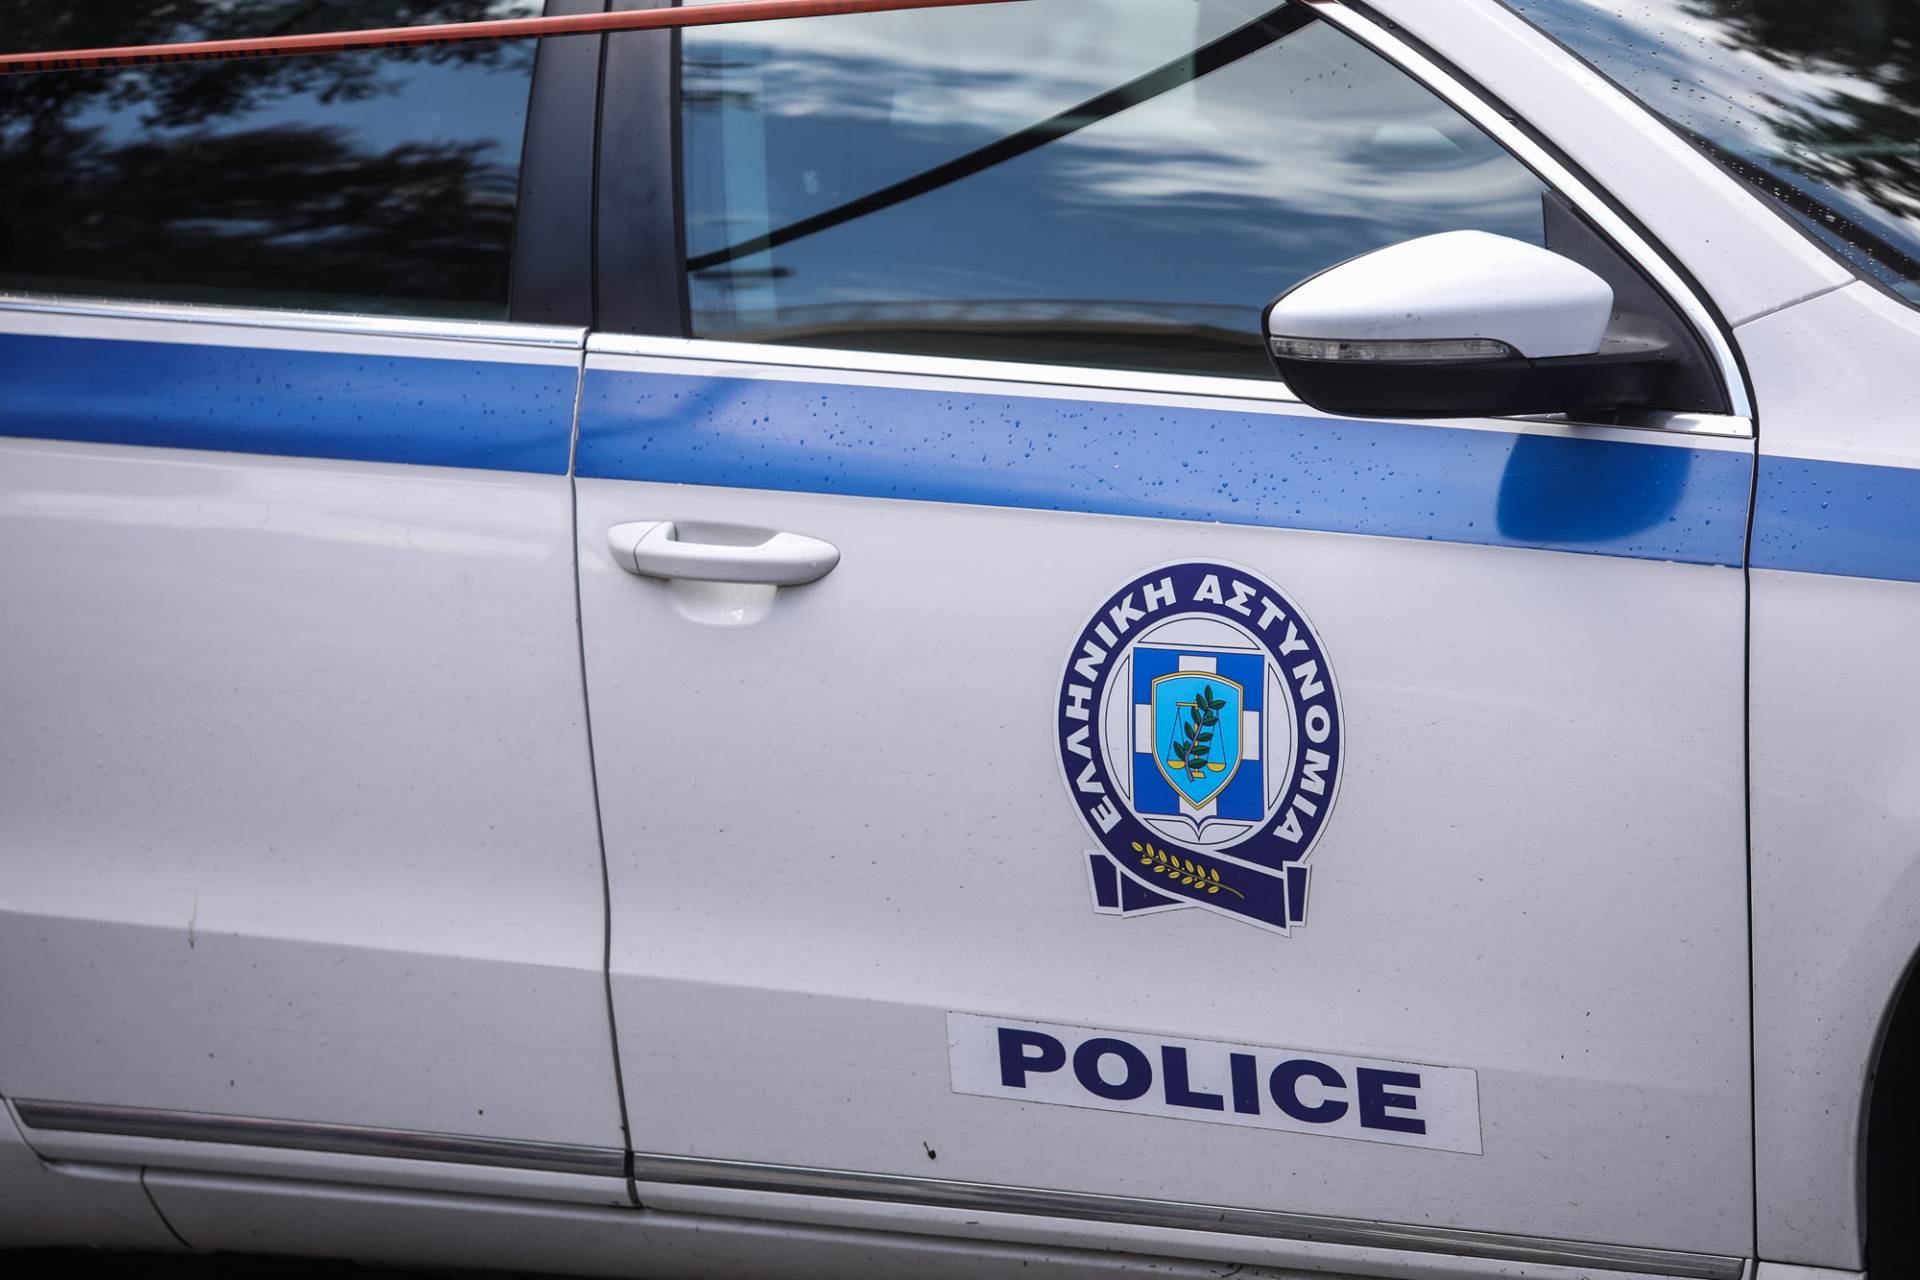 Τέσσερις συλλήψεις για το εργατικό δυστύχημα στο Πέραμα, με έναν νεκρό και δύο τραυματίες